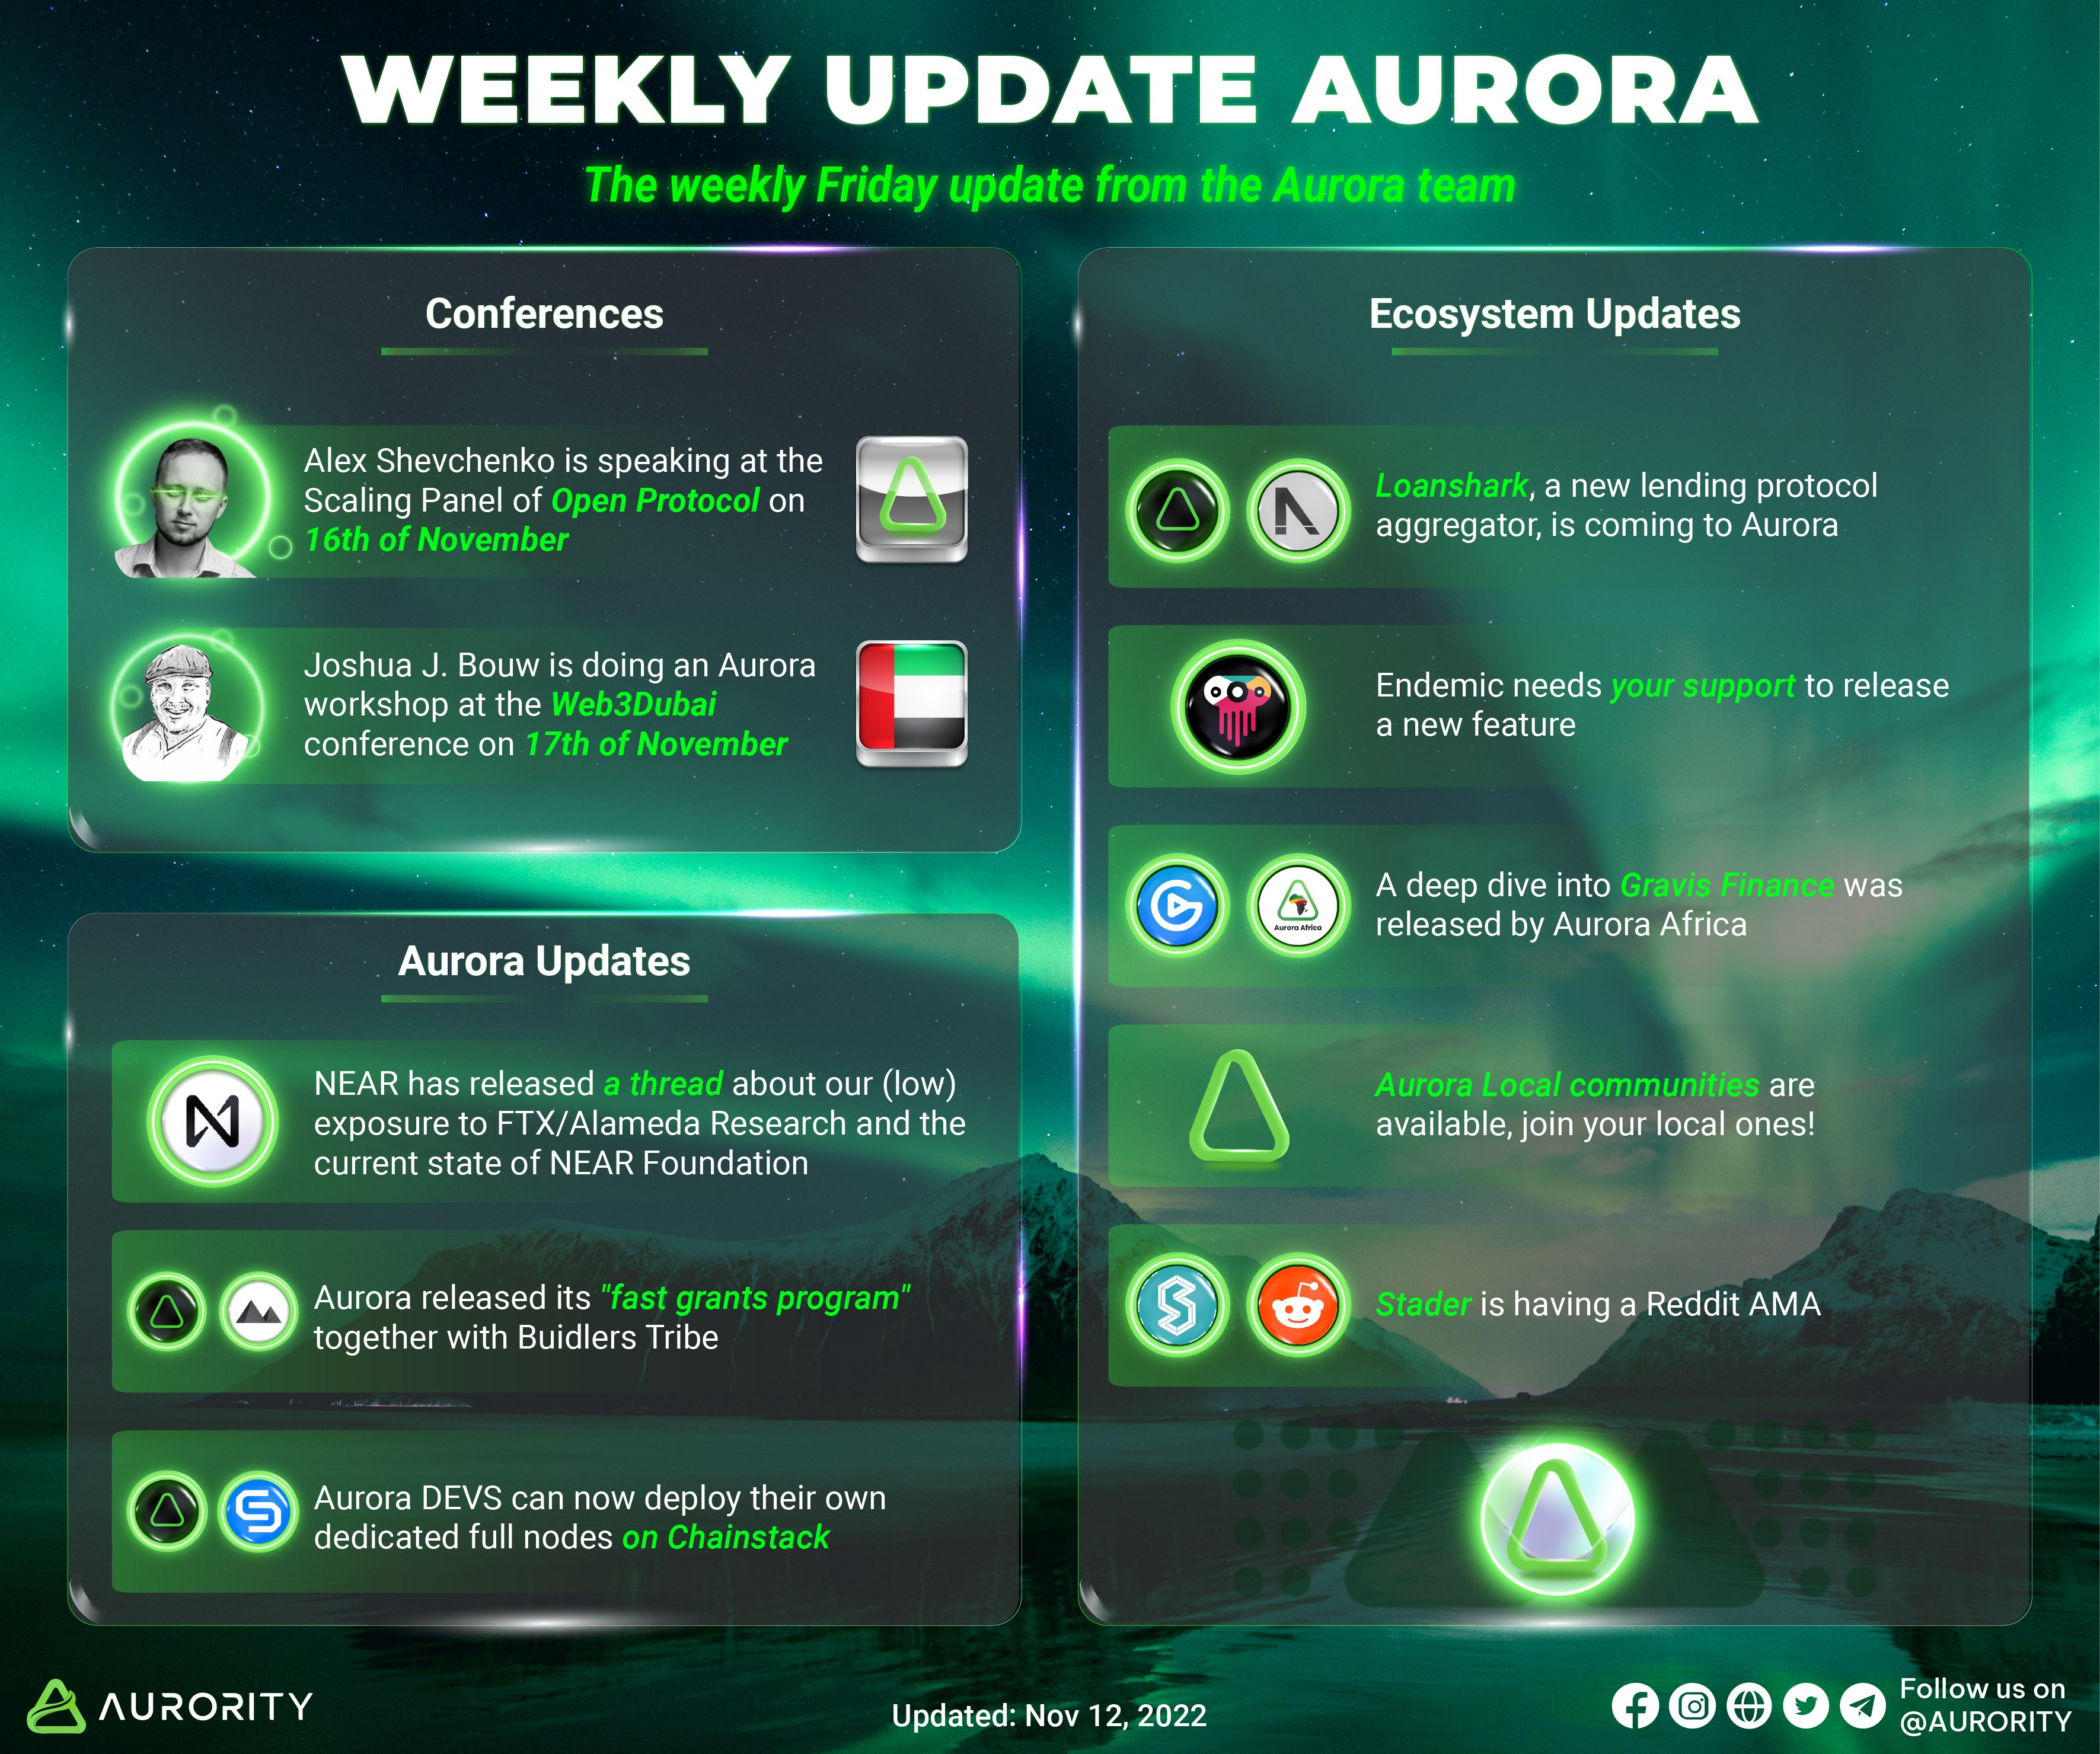 Weekly Update on Aurora